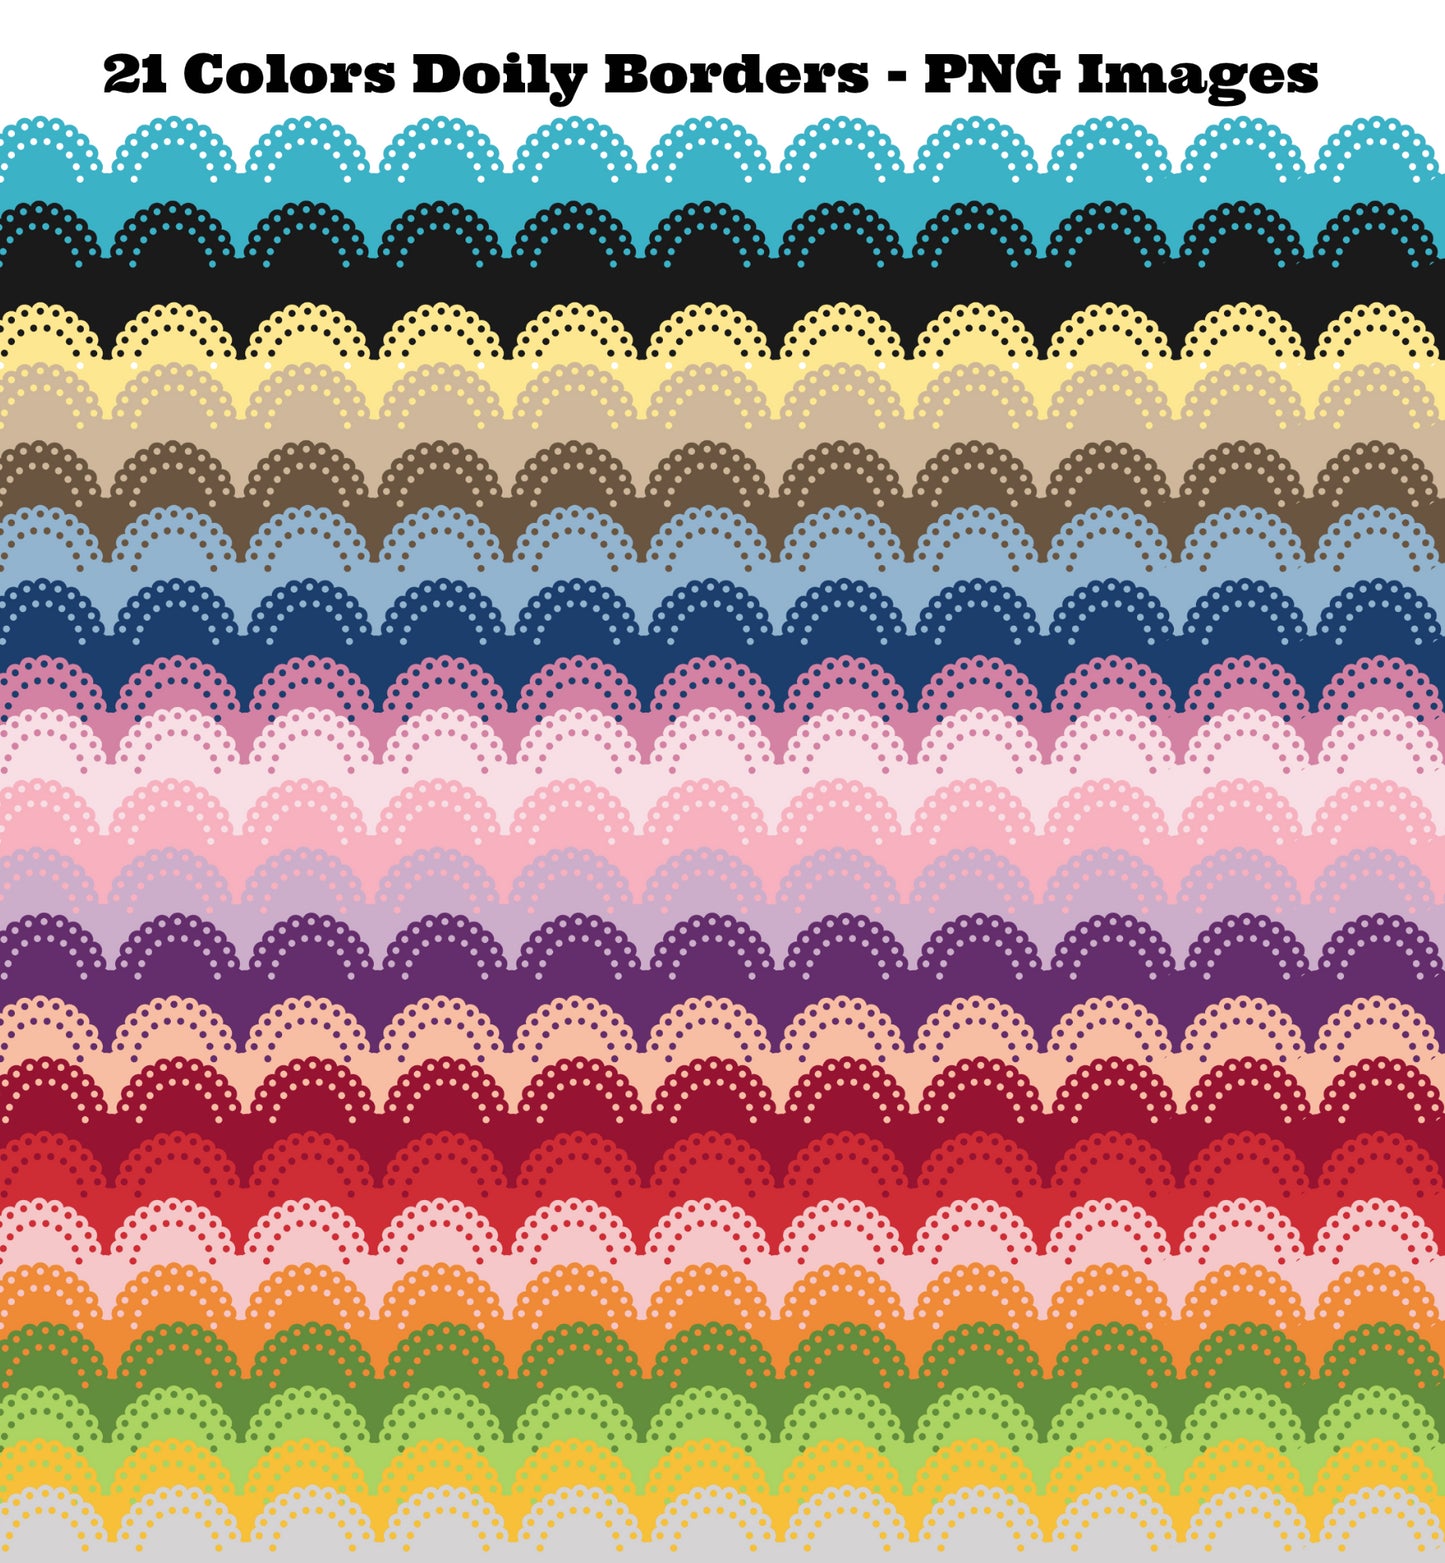 21 Colors - Doily Borders - Trim